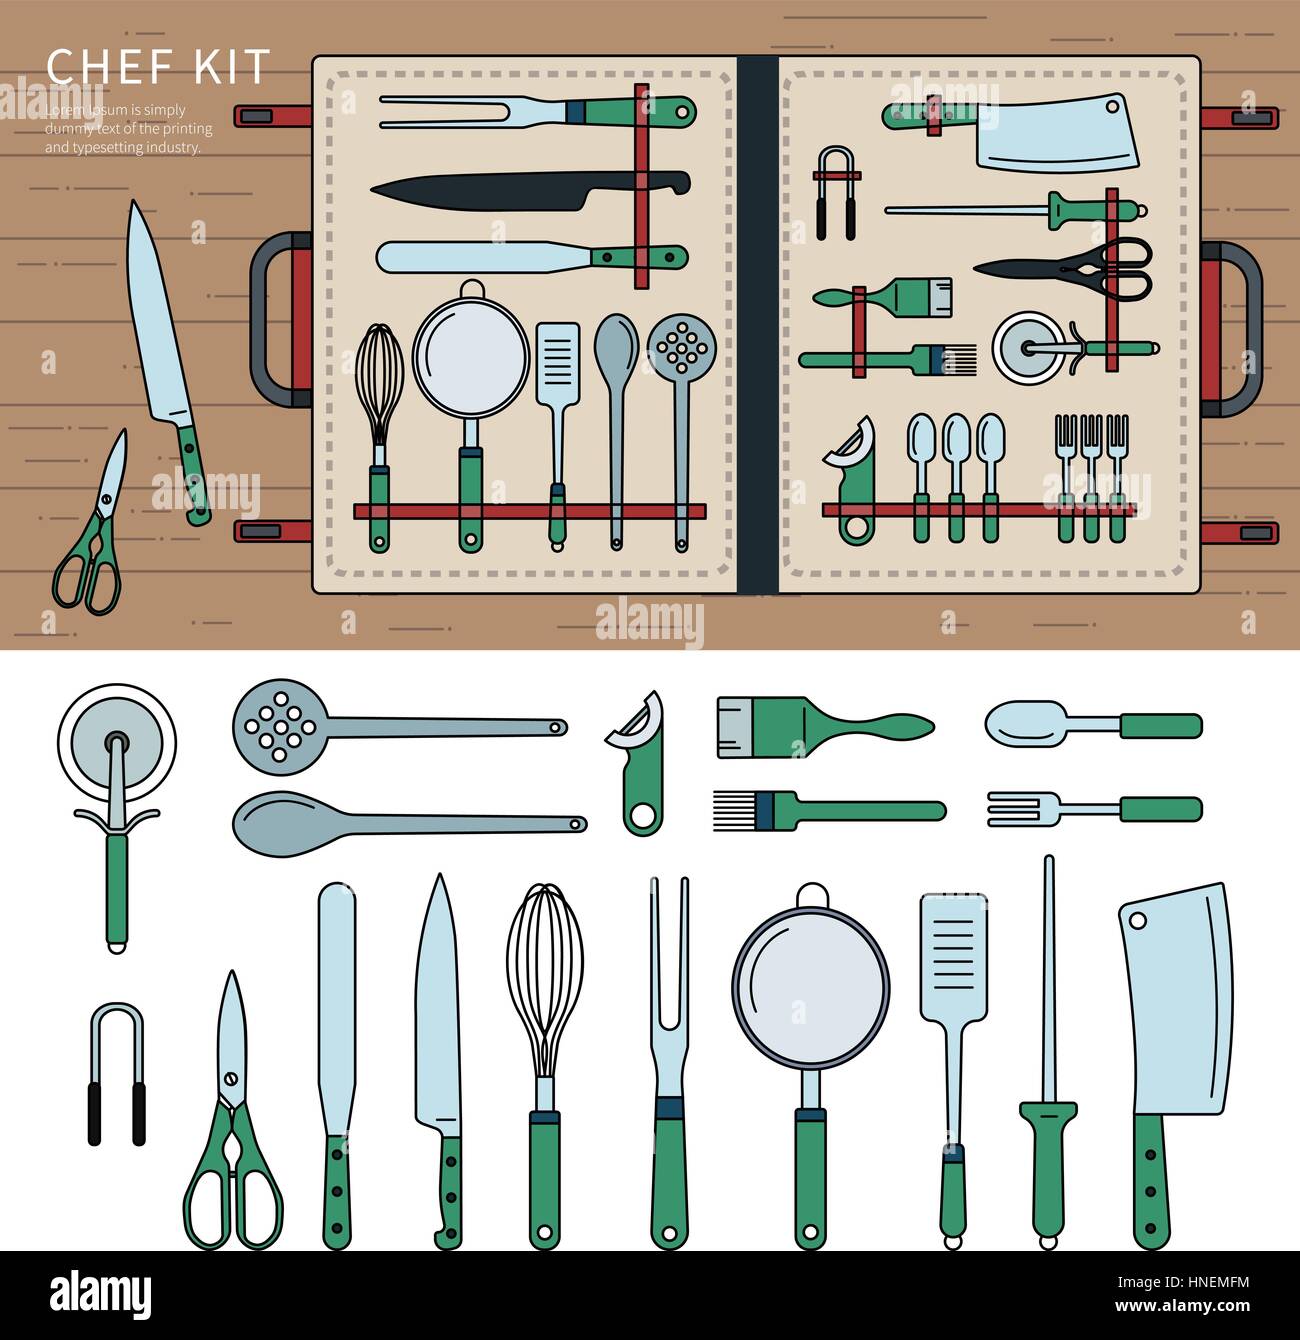 https://c8.alamy.com/compfr/hnemfm/fine-ligne-conception-du-kit-d-ustensiles-de-cuisine-couteaux-et-ciseaux-dans-la-pile-est-pose-sur-une-table-en-bois-outils-de-cuisine-afin-isole-sur-blanc-retour-hnemfm.jpg